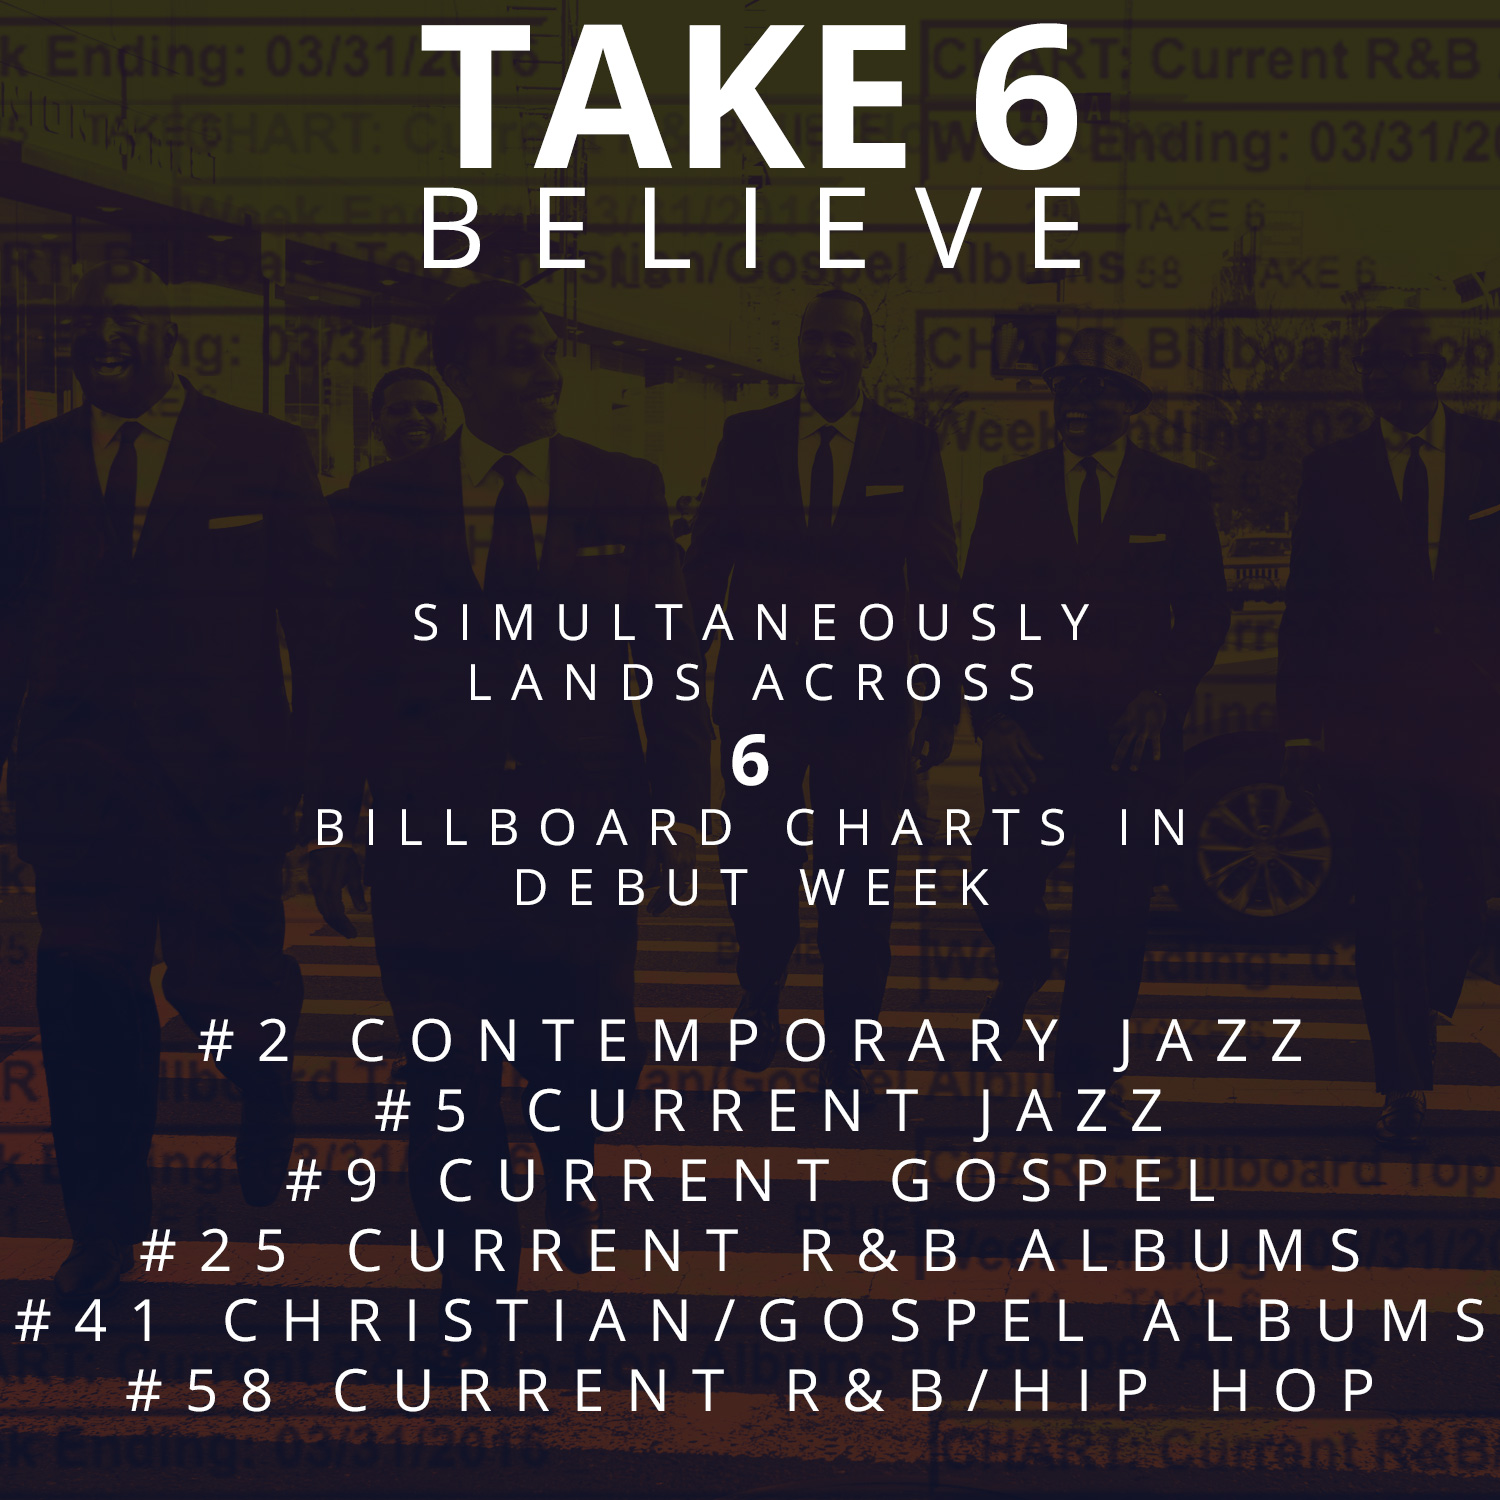 indebære hår fejl Believe” Scores Big on the Billboard Charts During Debut Week - Take6.com -  Official Website for Take 6